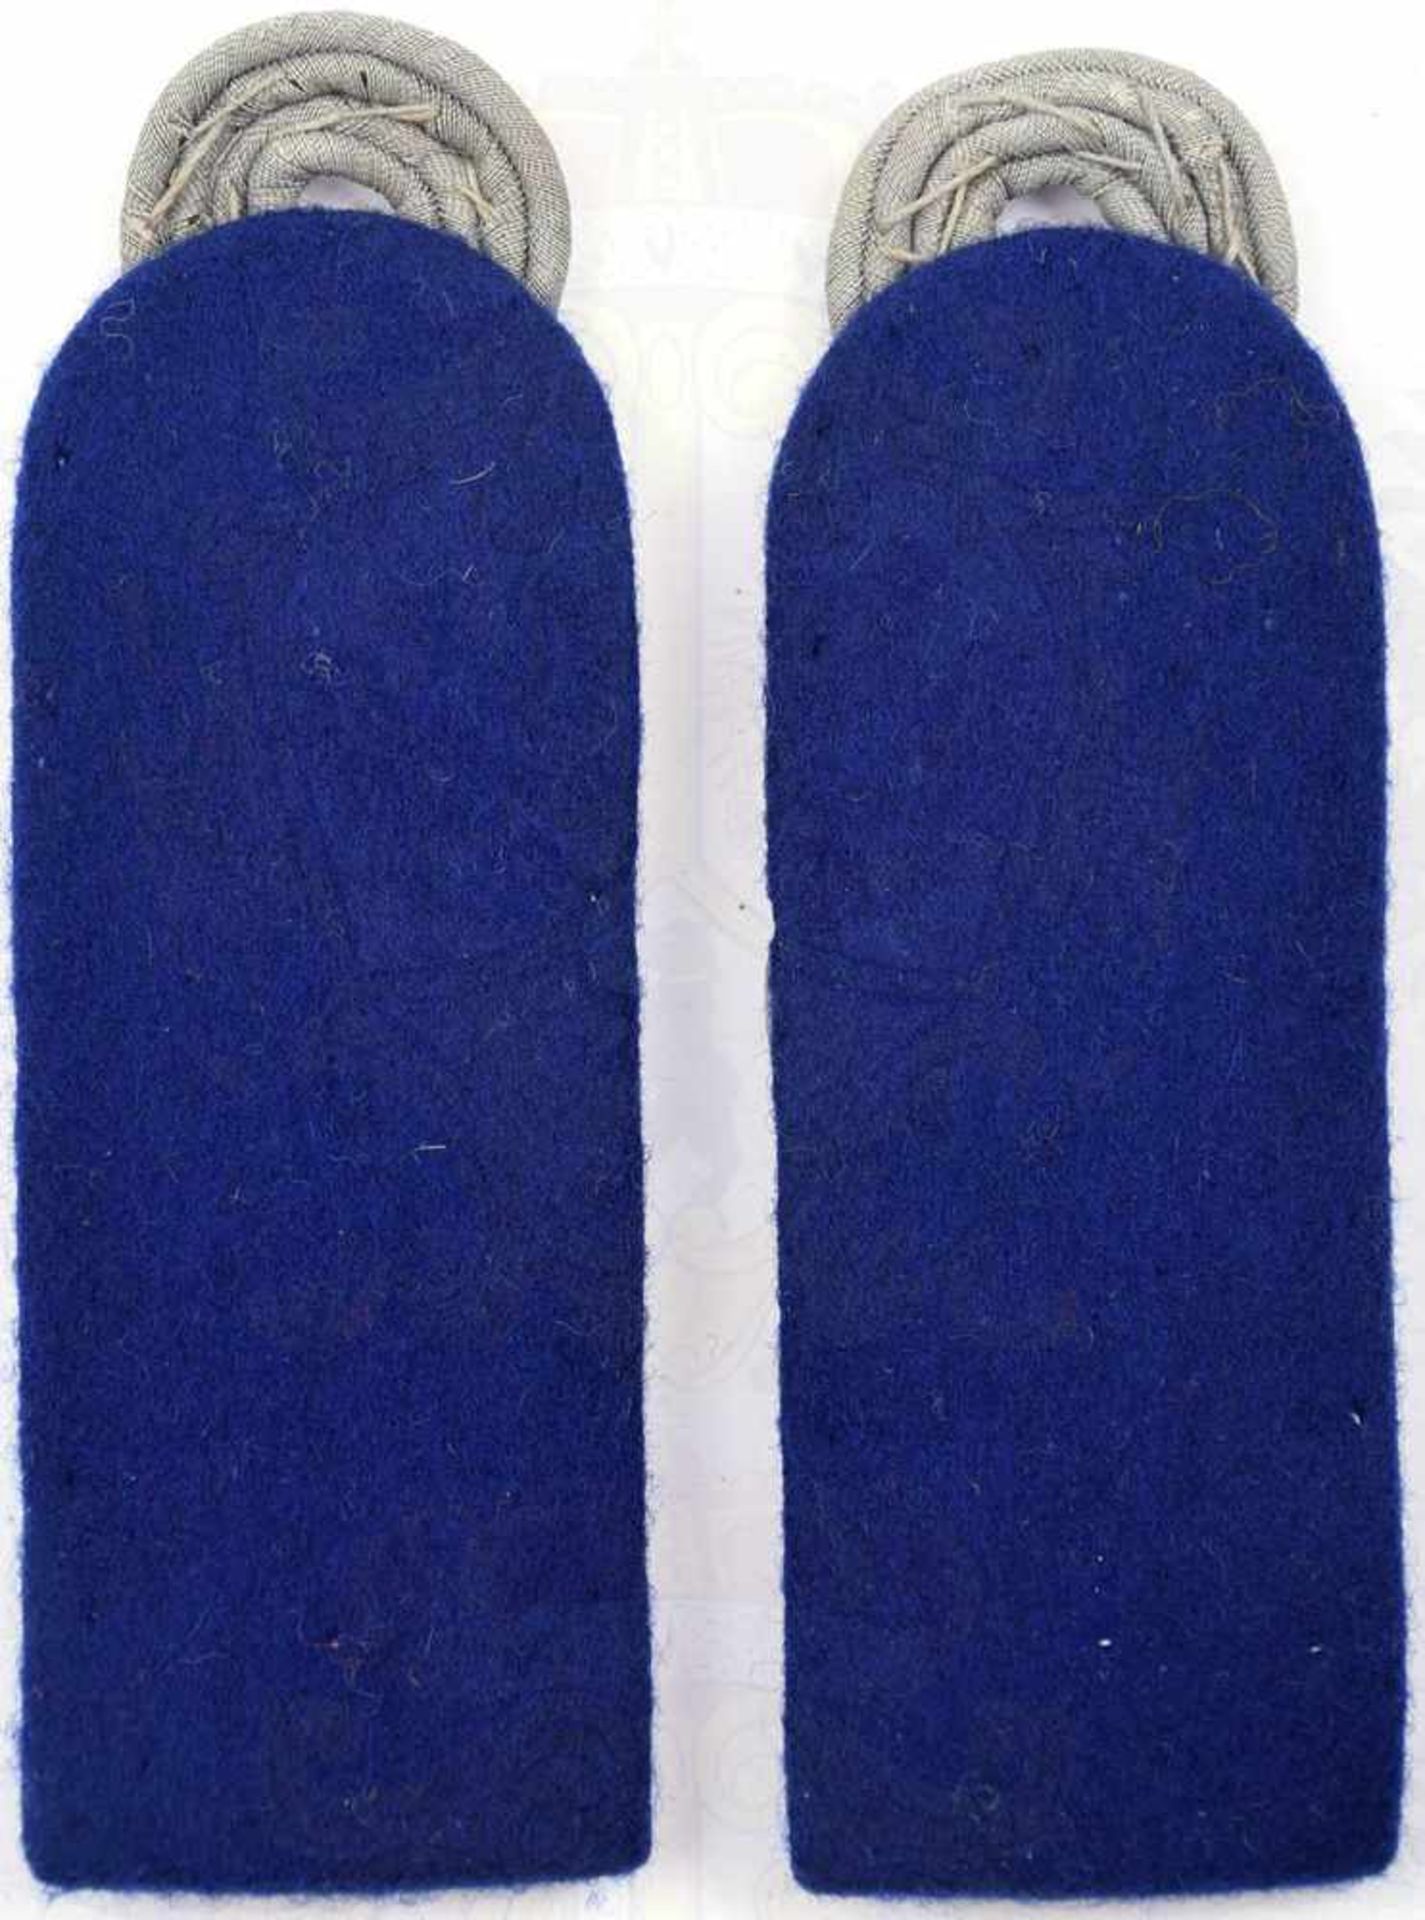 PAAR SCHULTERSTÜCKE OBERSTABSARZT, mattgraues Gespinst auf dunkelblauem Tuch, Enden m. - Bild 2 aus 2